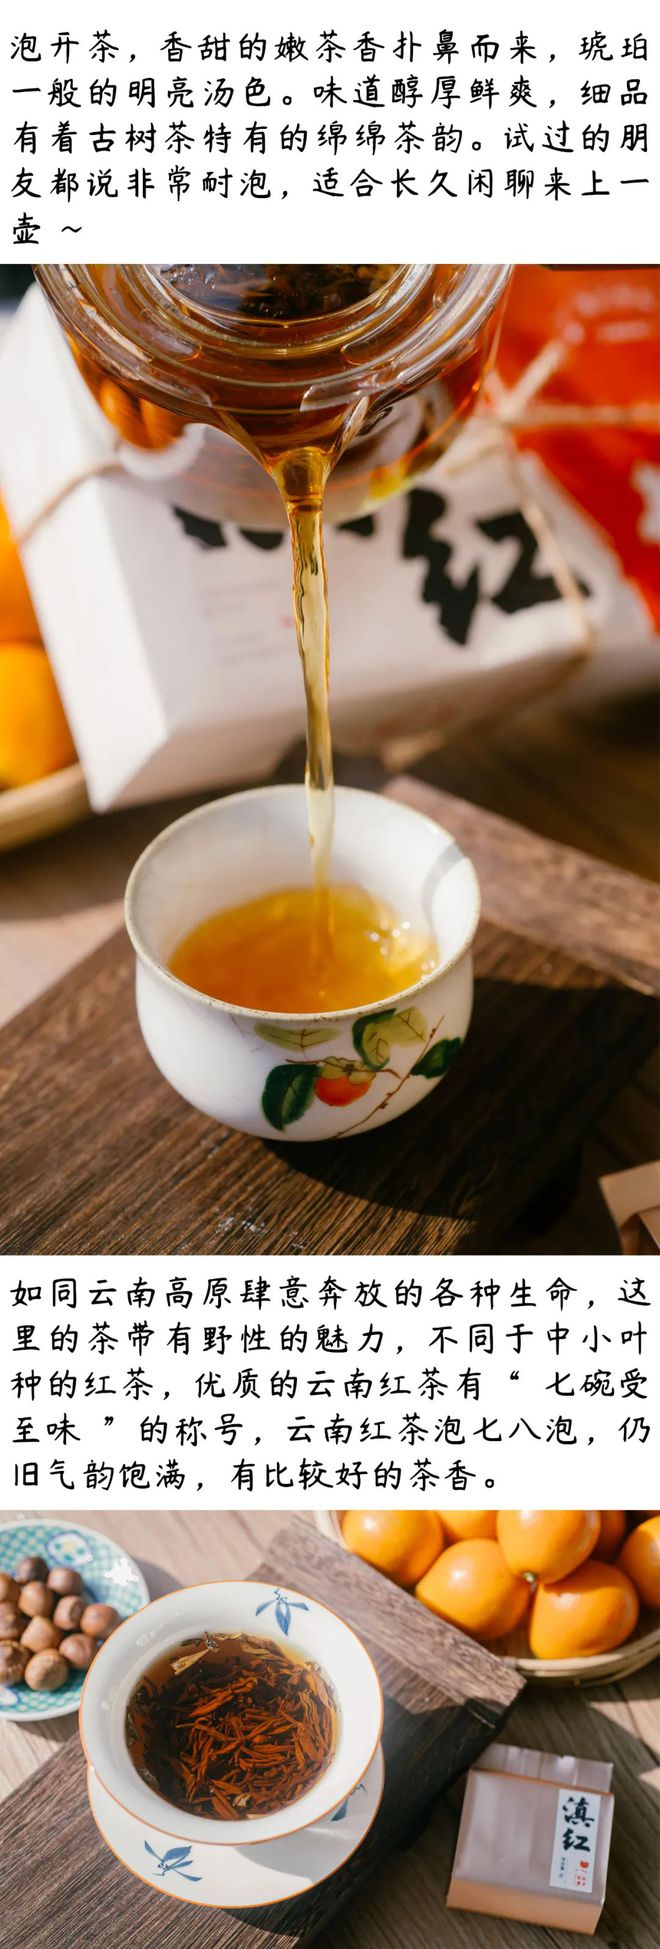 茶叶产品软文(茶叶的营销文案)